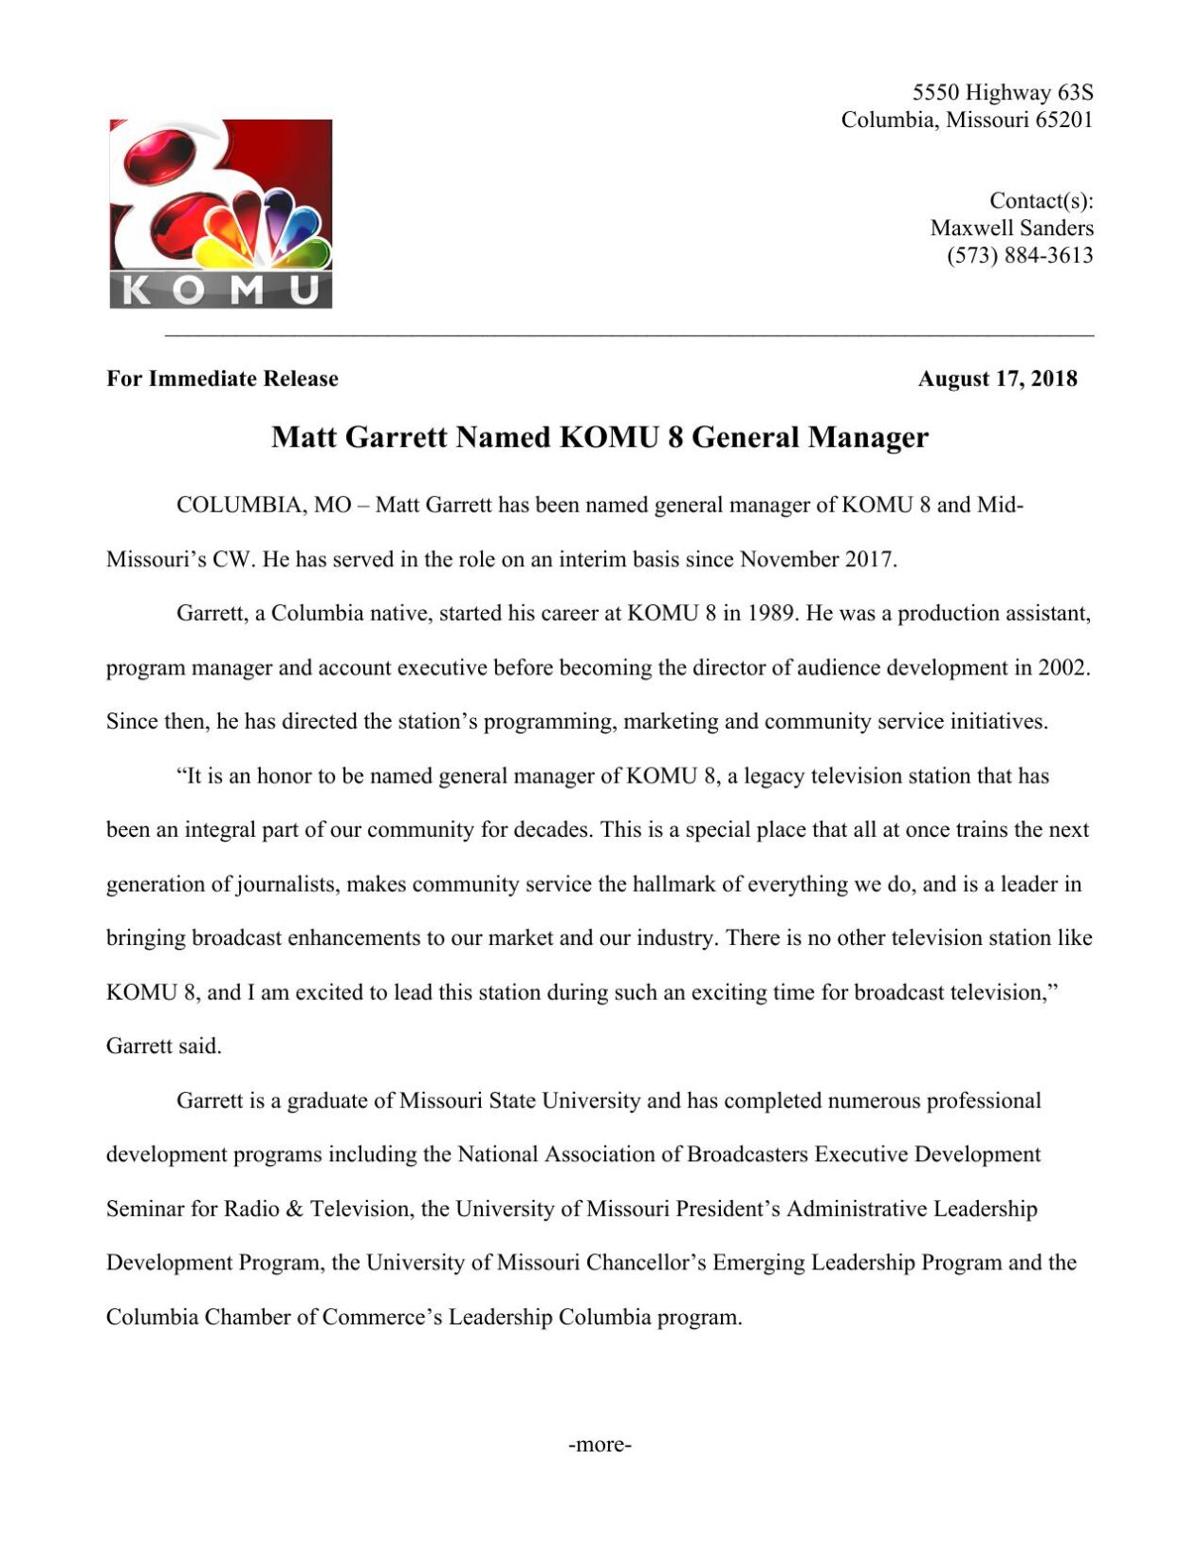 Matt Garrett Named KOMU 8 General Manager